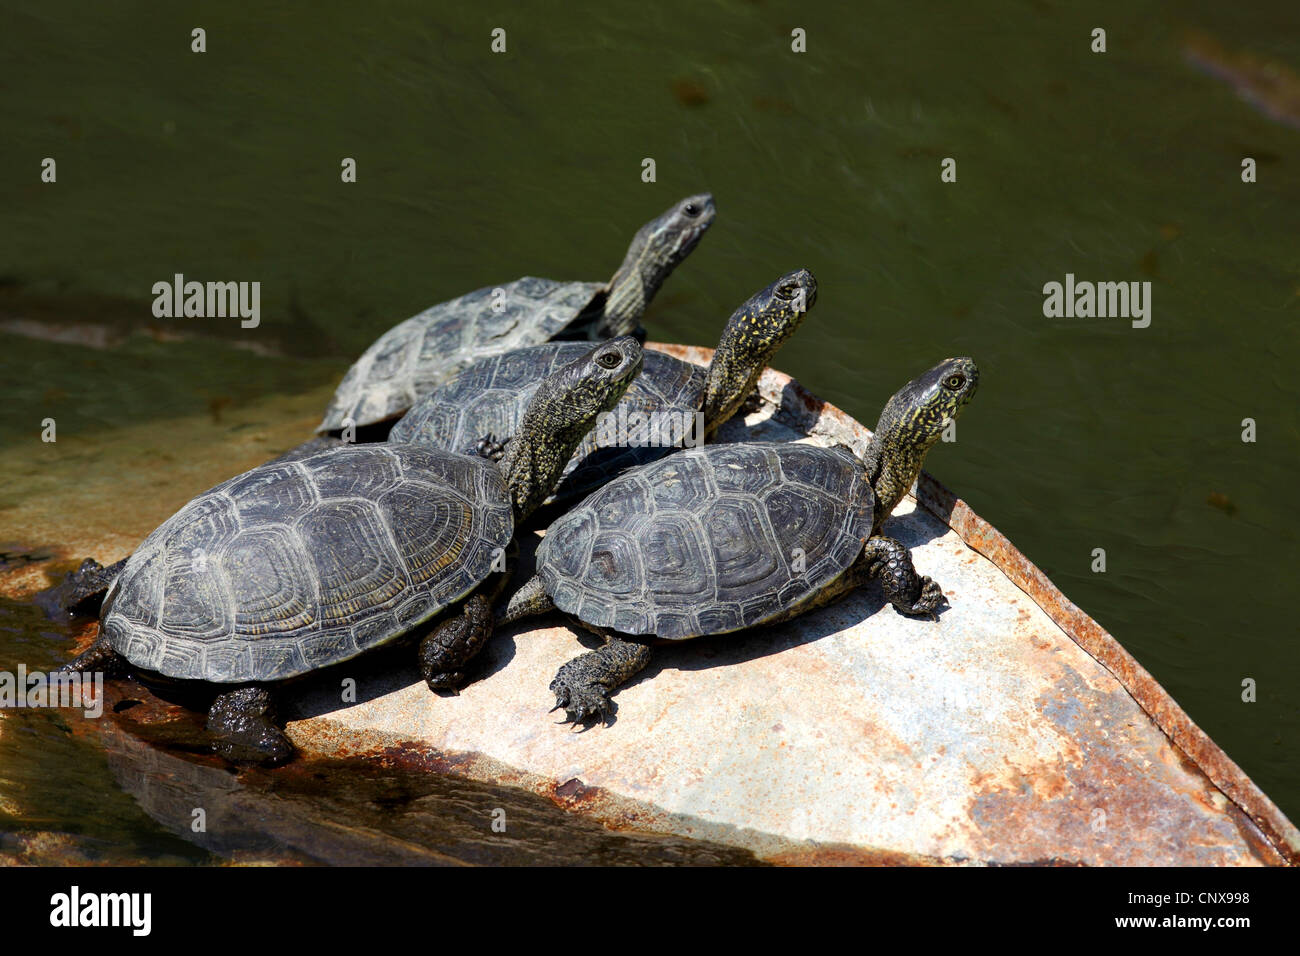 Estanque europeo galápago europeo, estanque de tortugas, la tortuga de estanque europeo (Emys orbicularis), grupo en el waterfront, Grecia, Lesbos Foto de stock